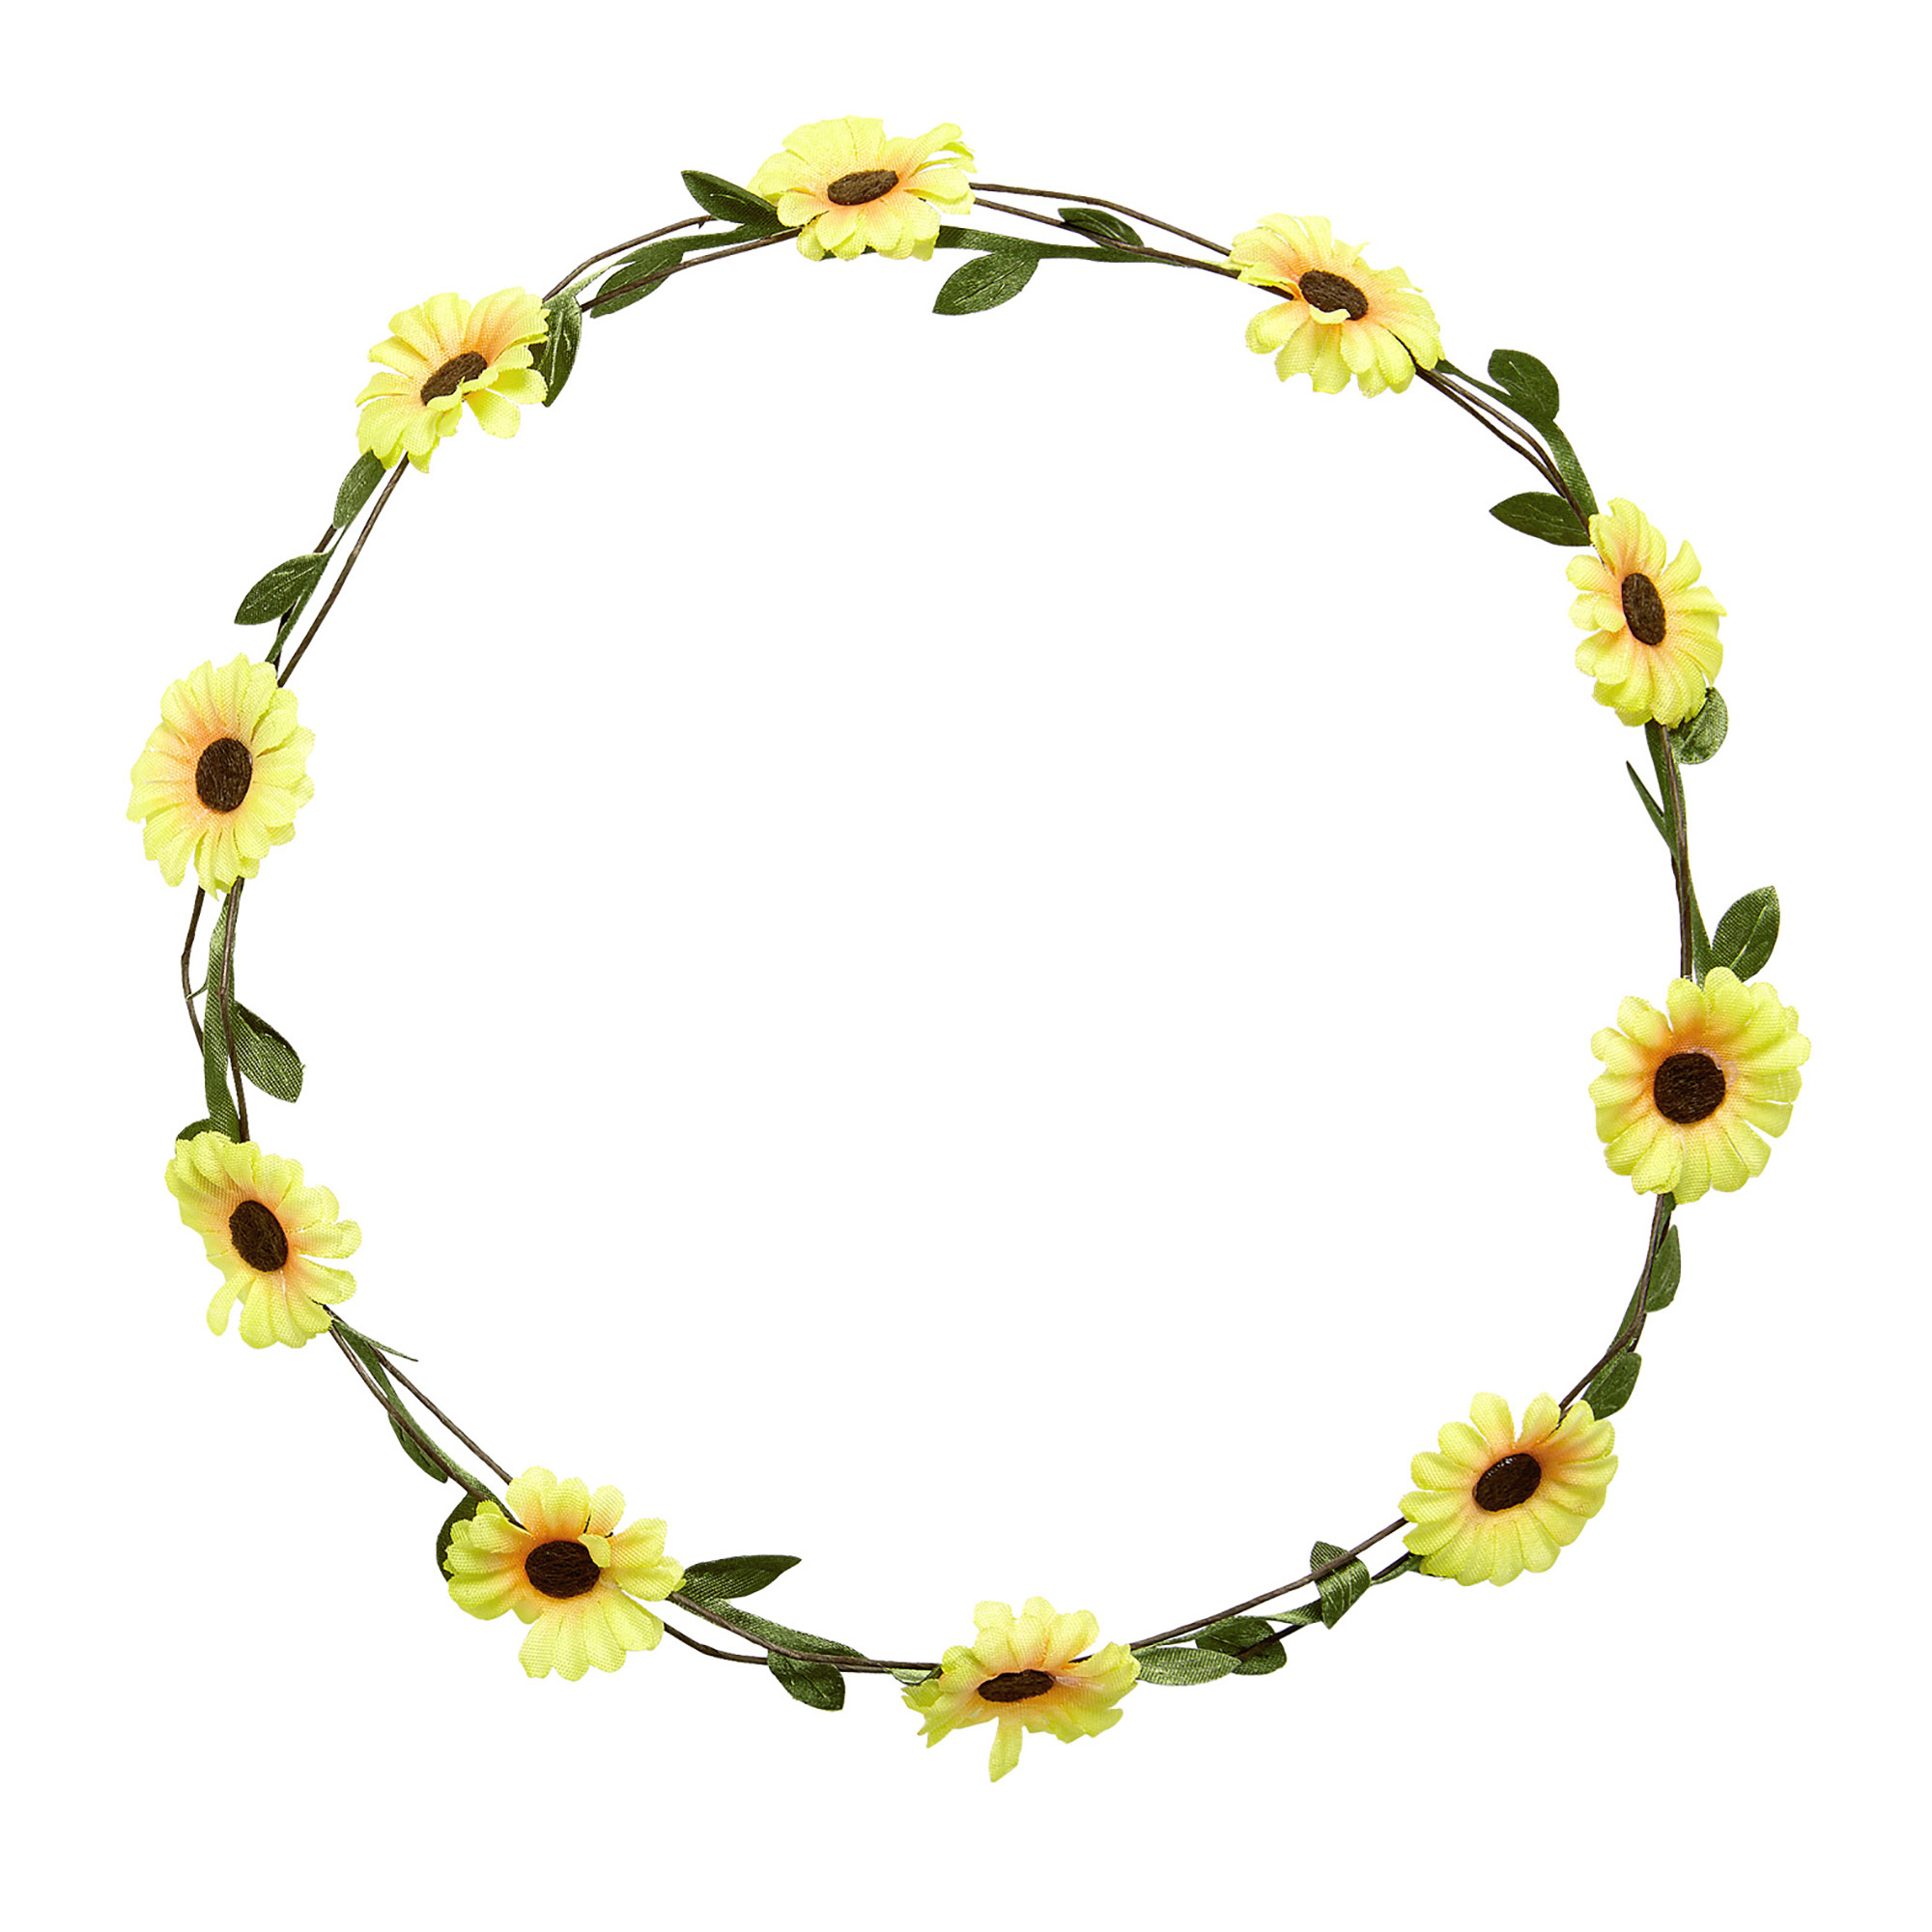 hoofdband hippie bloemenkrans met gele bloemen